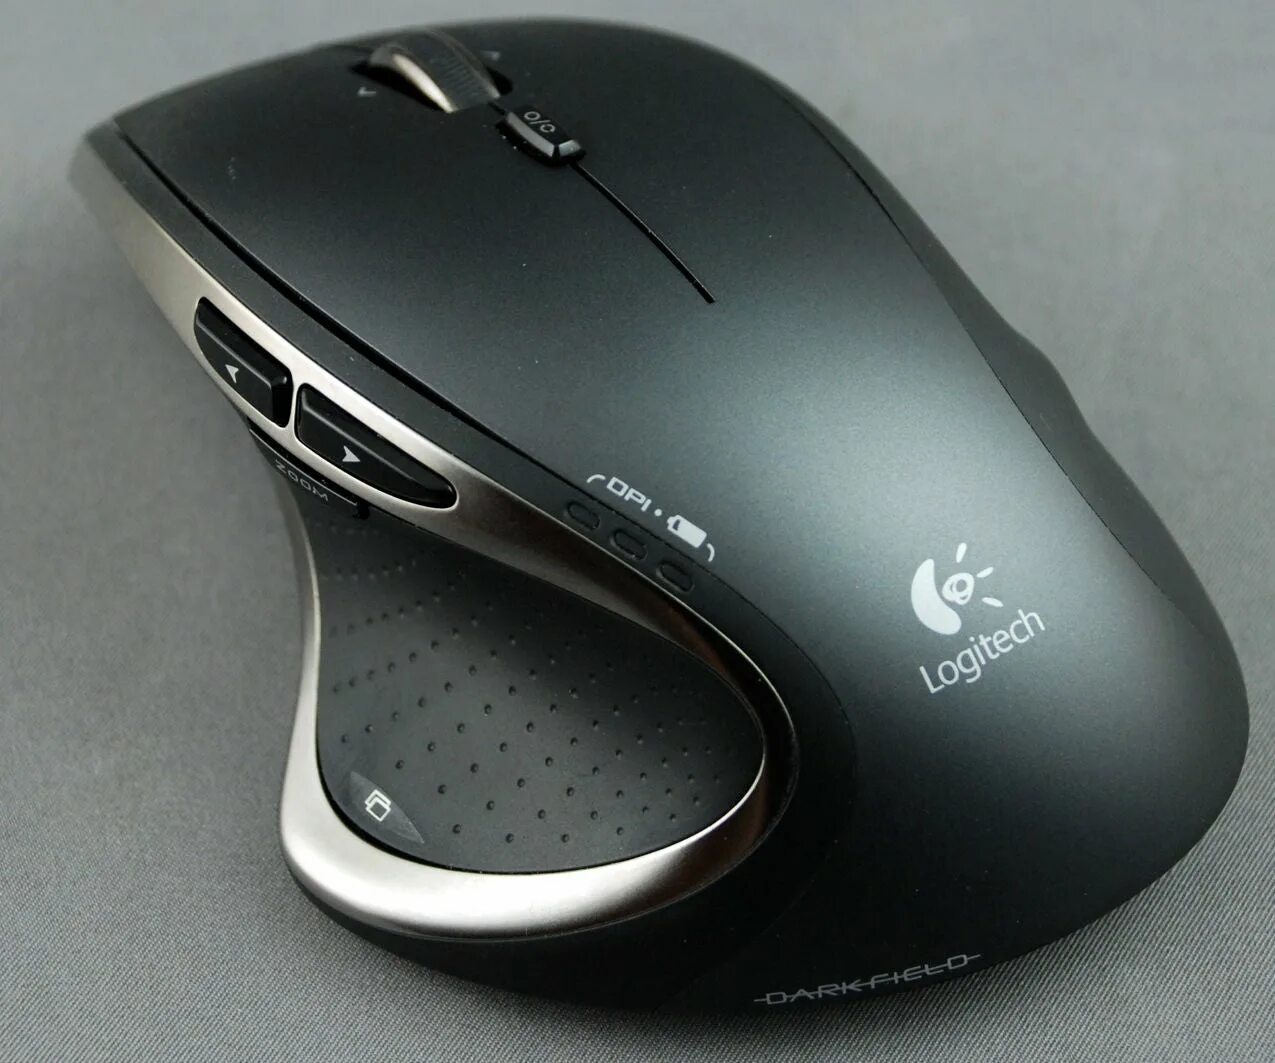 Mx мышь logitech купить. Мышь Logitech Performance MX. Мышь Logitech Performance Mouse MX (910-001120). Logitech Performance MX. Logitech MX m950.